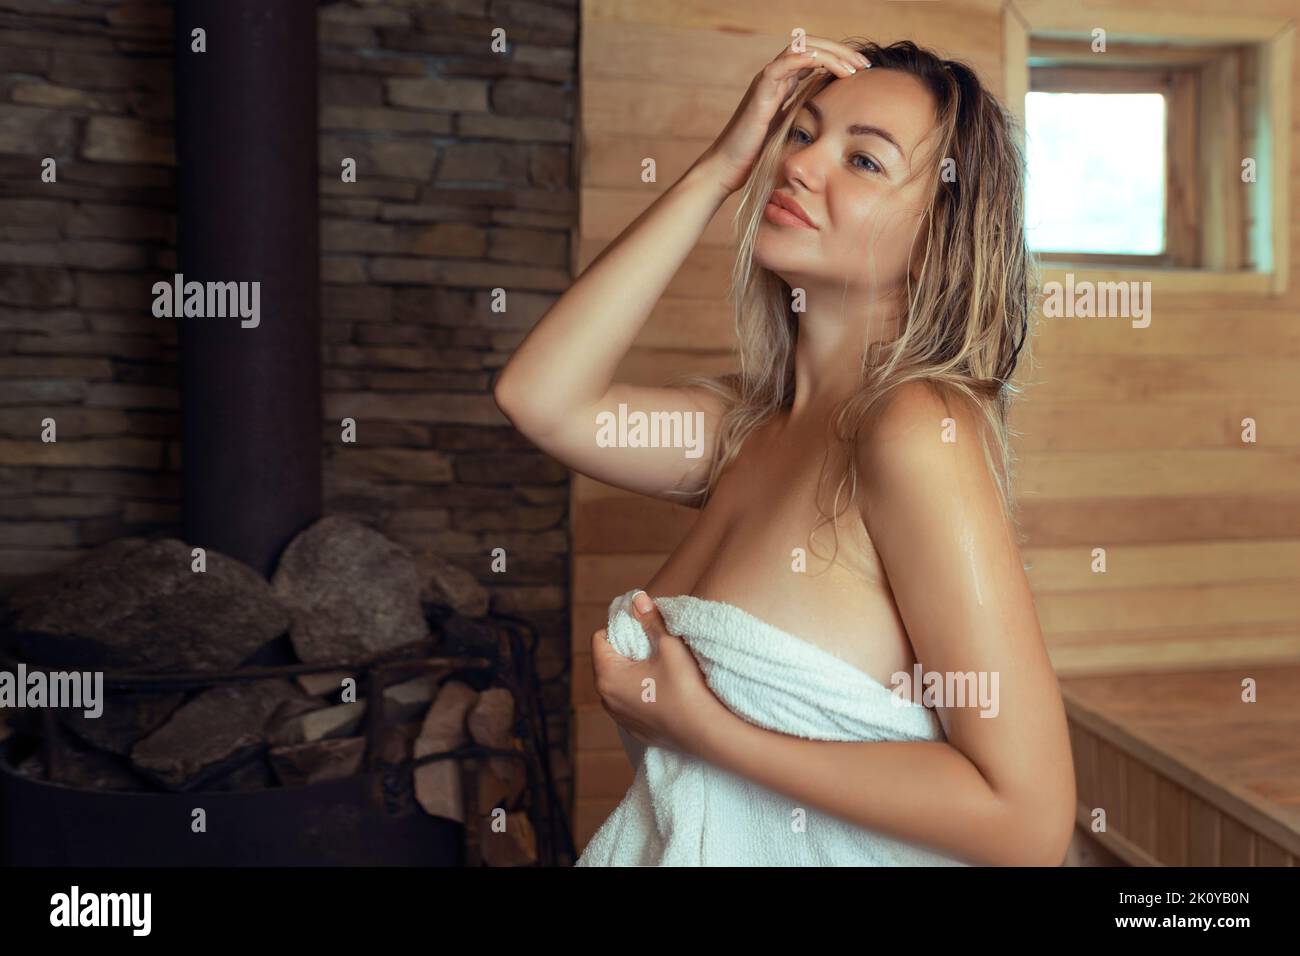 Eine junge Frau entspannt sich und schwitzt in einer heißen Sauna, die in ein Handtuch gehüllt ist. Mädchen in der Sauna. Finnische Sauna im Inneren, klassische Holzsauna mit heißem Dampf Stockfoto